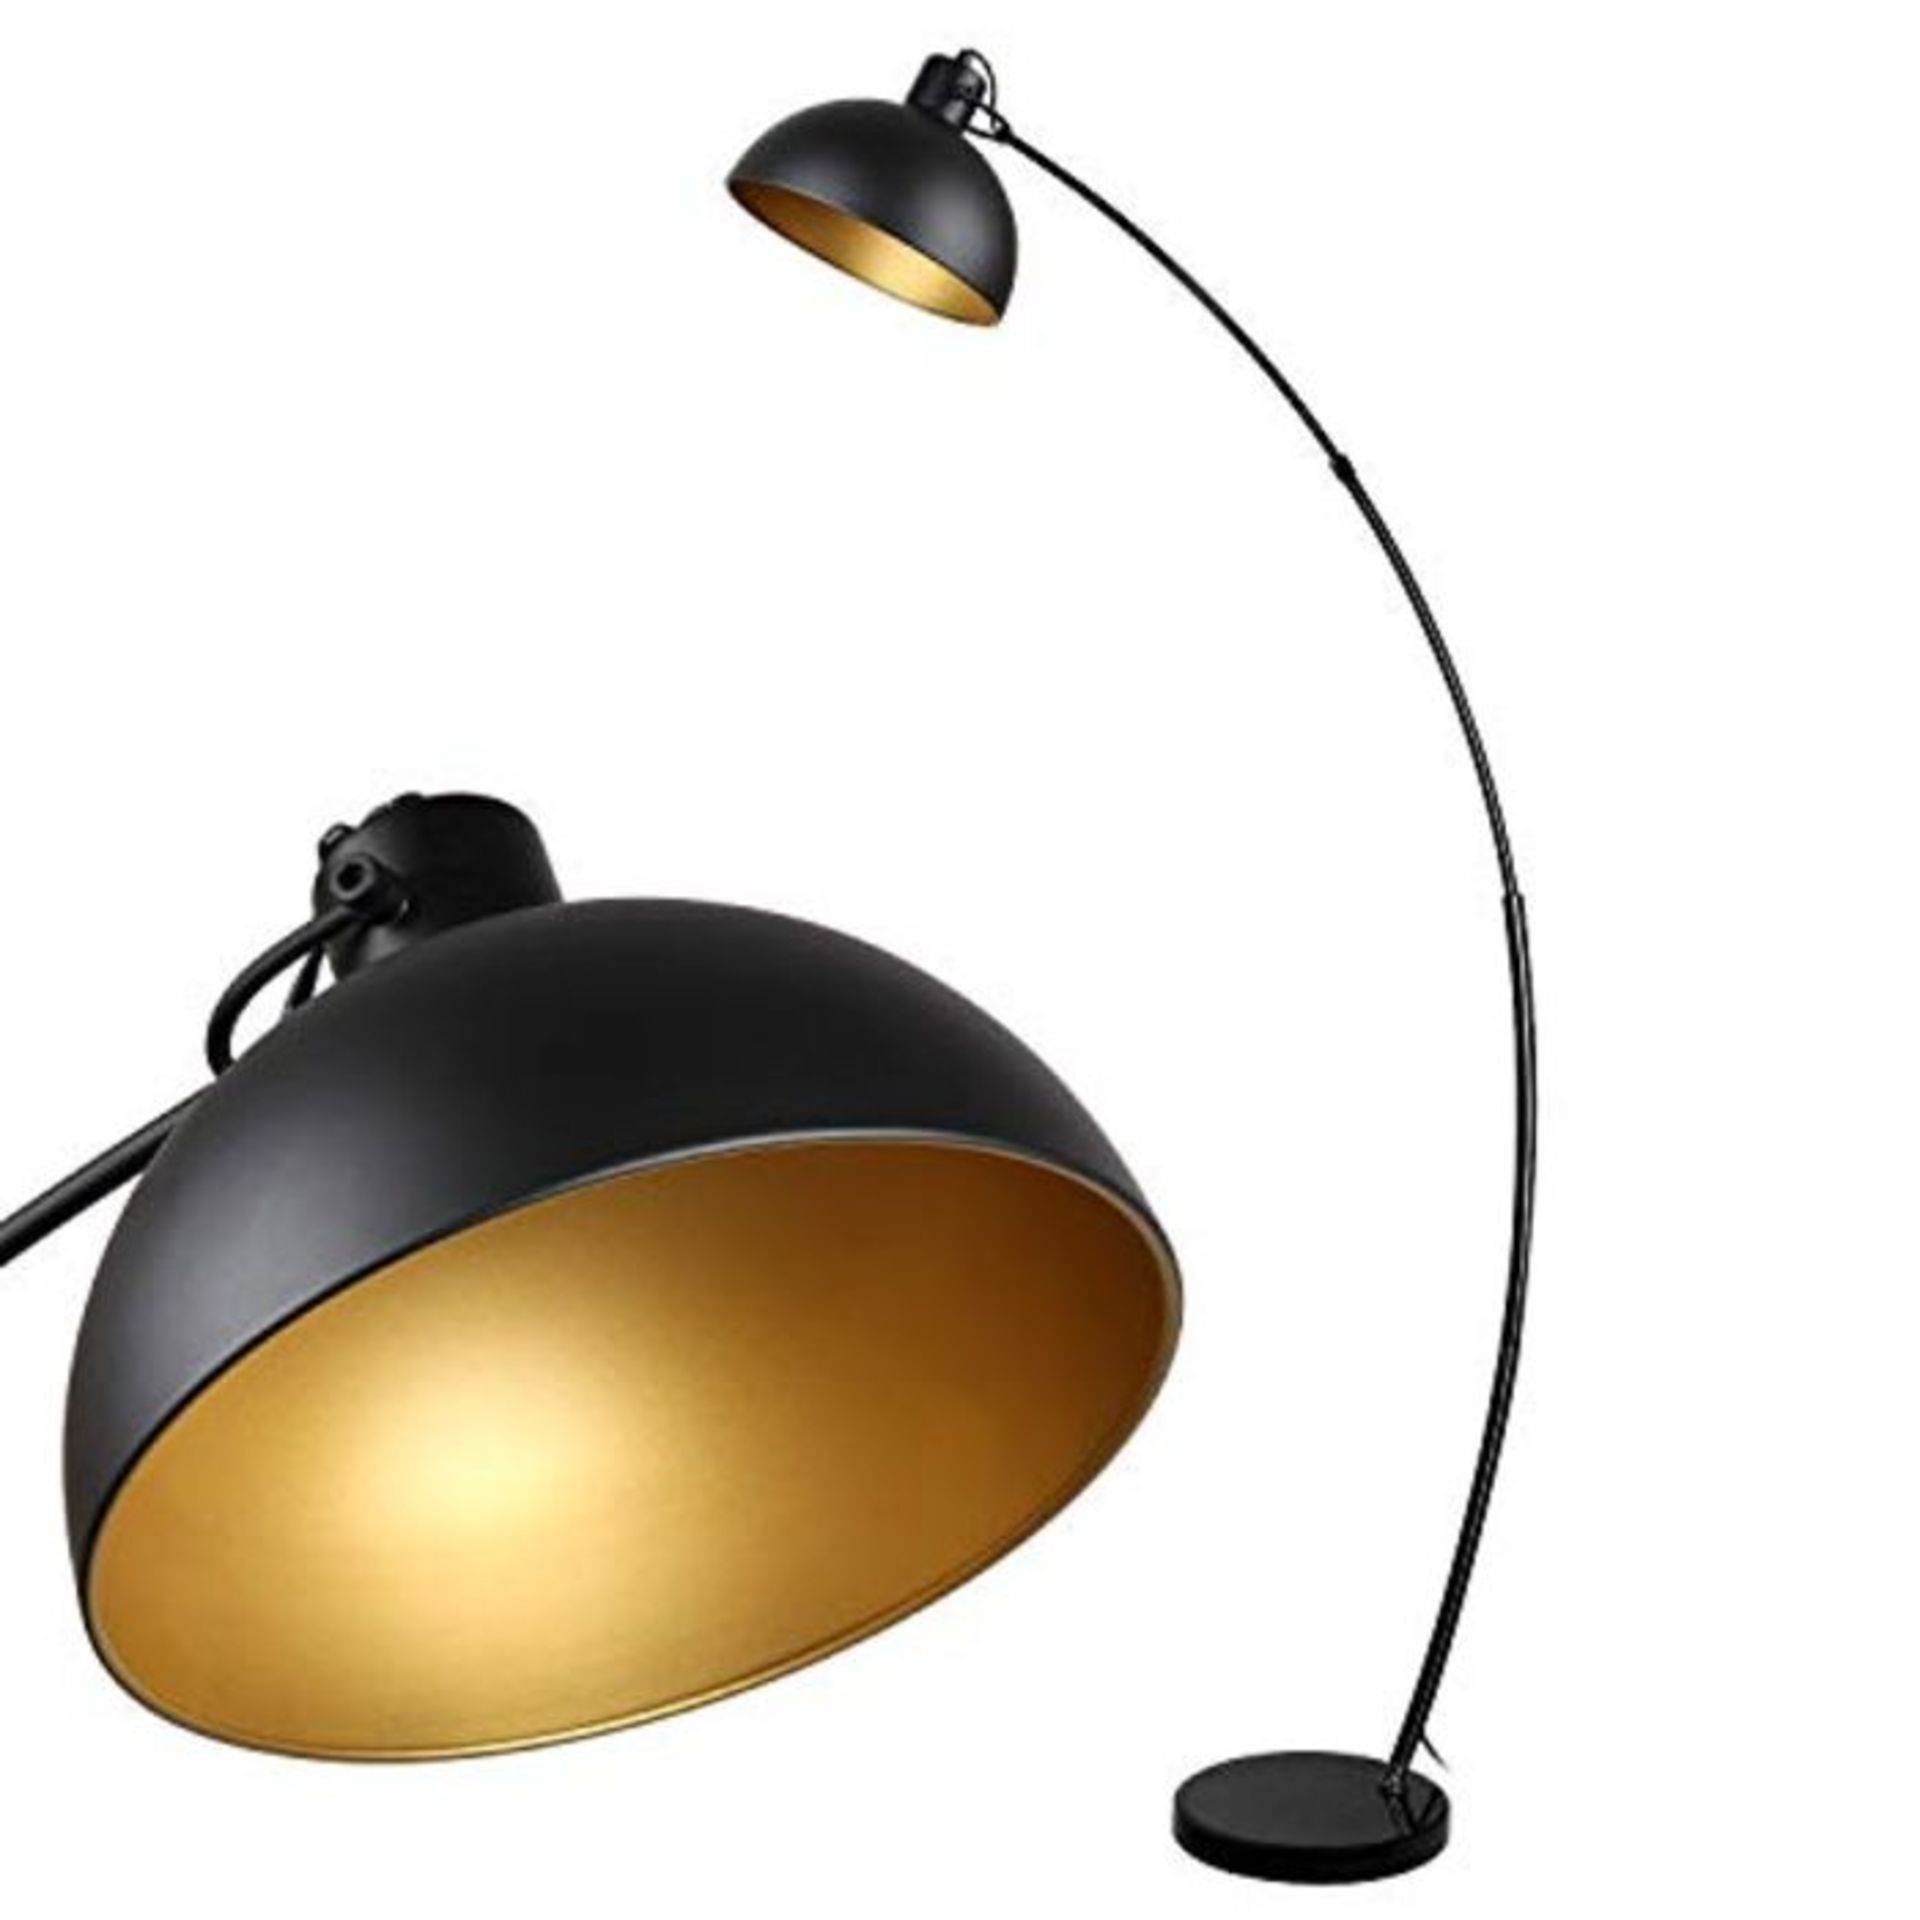 Floor lamp, Osasy Vintage Arc Floor Lamp,Retro Floor Lamps in Black-Golden,Adjustable